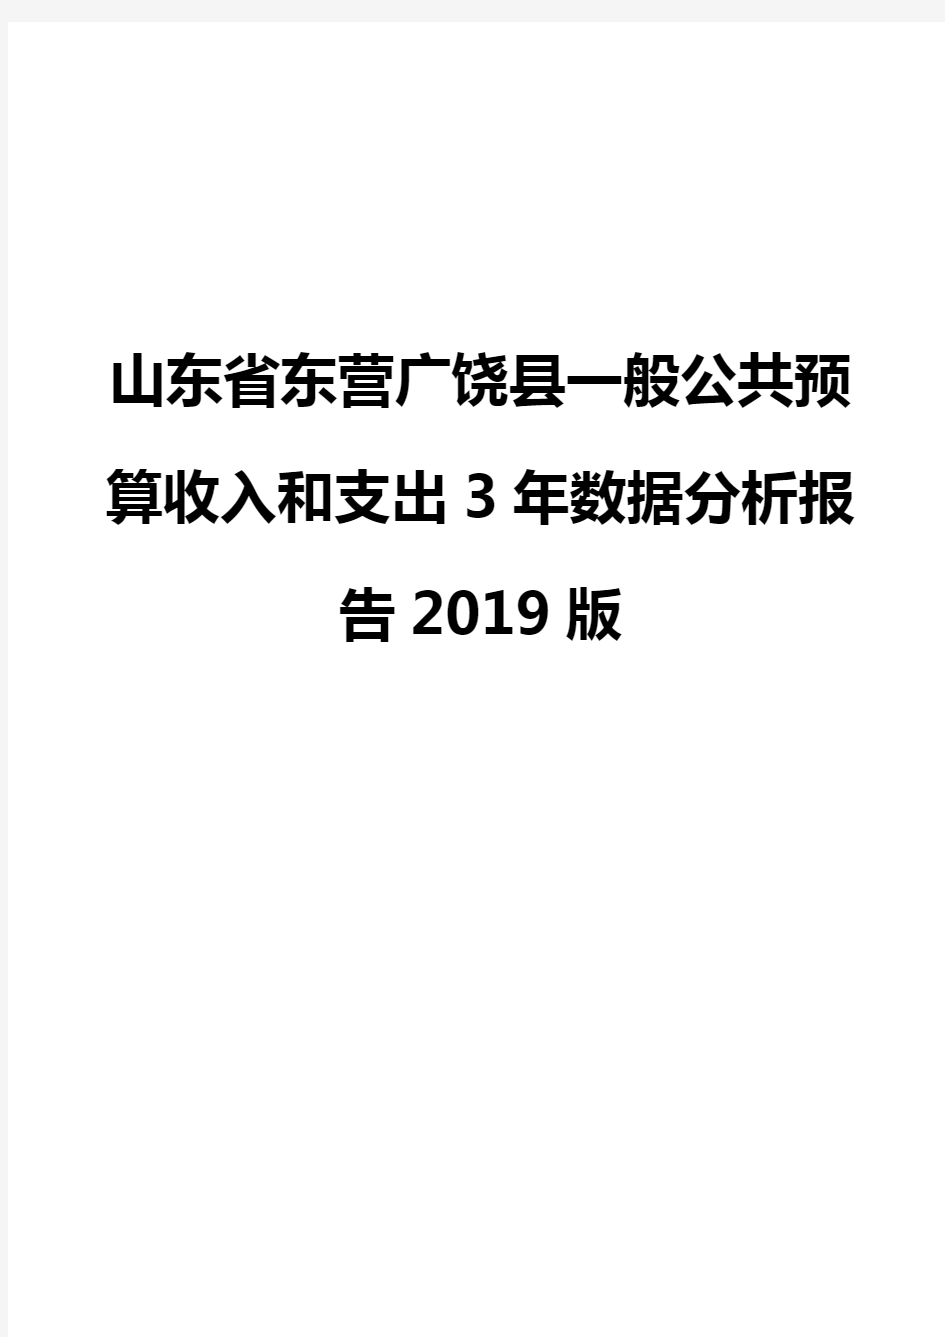 山东省东营广饶县一般公共预算收入和支出3年数据分析报告2019版